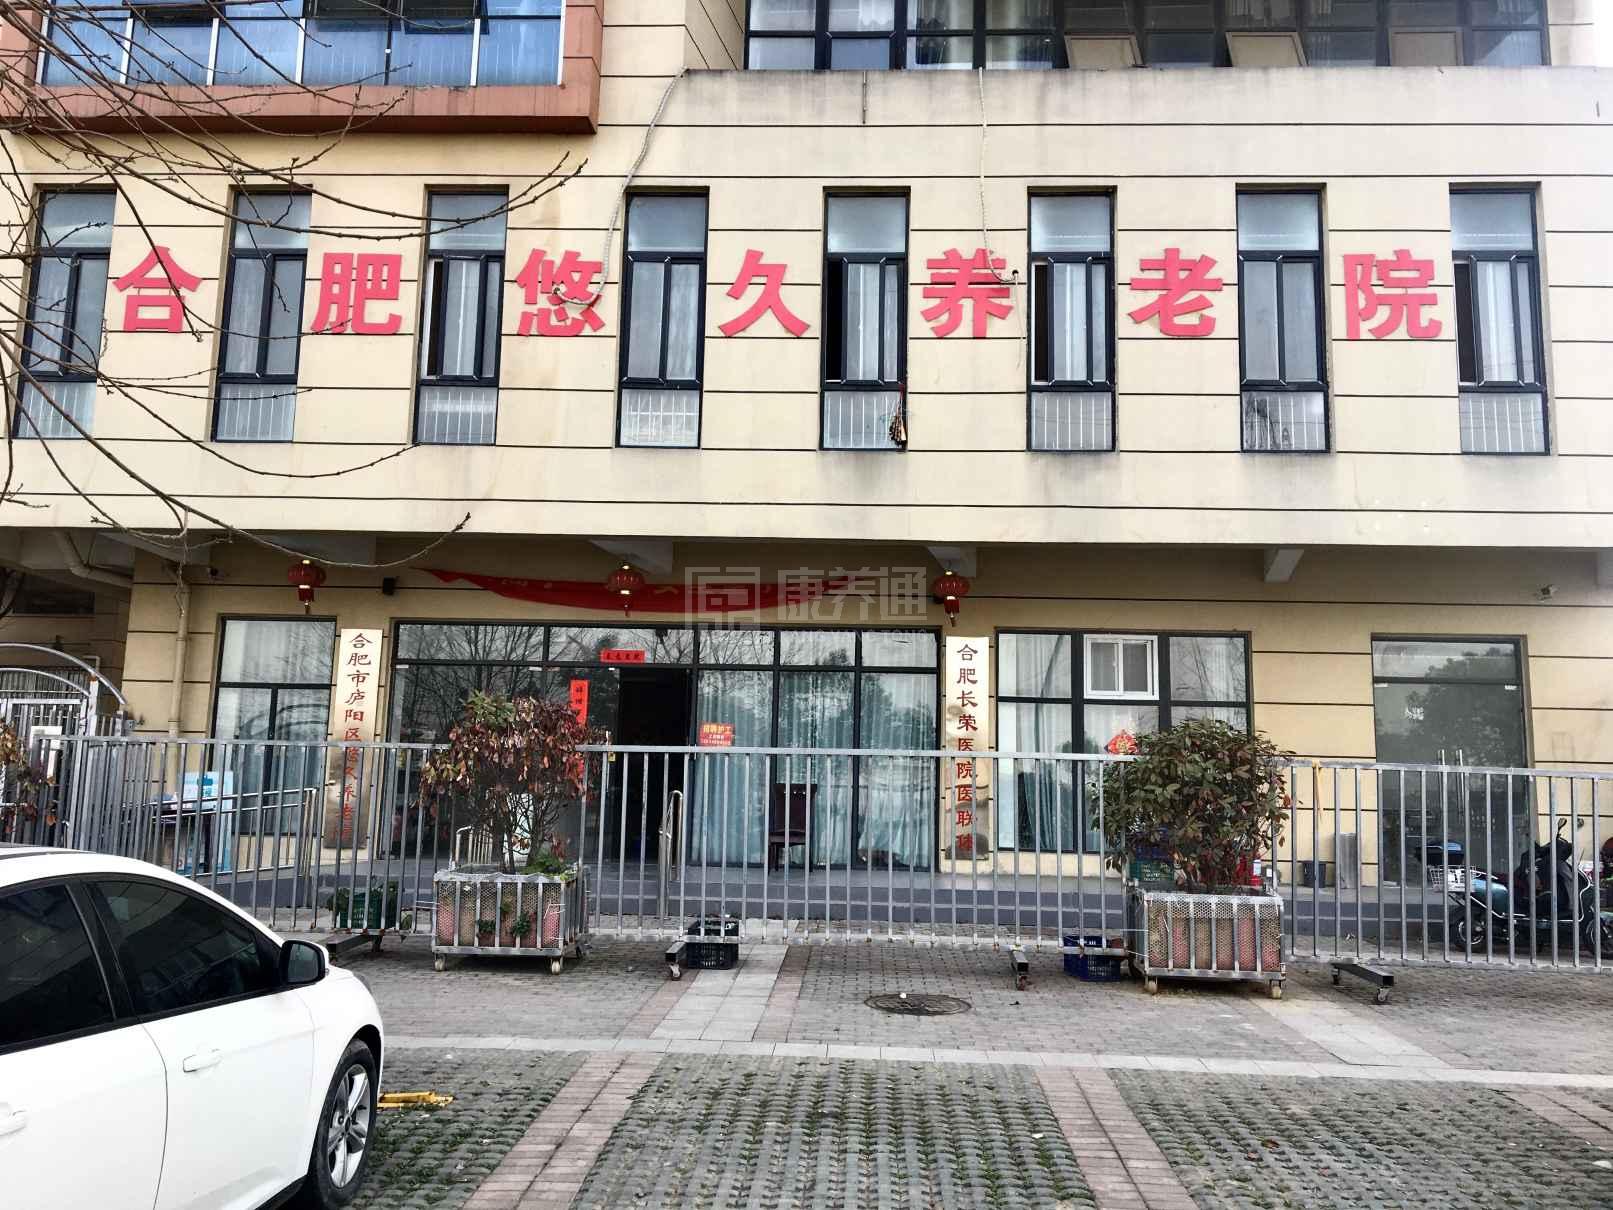 安徽省鑫悠久老年服务有限公司环境图-洗手间